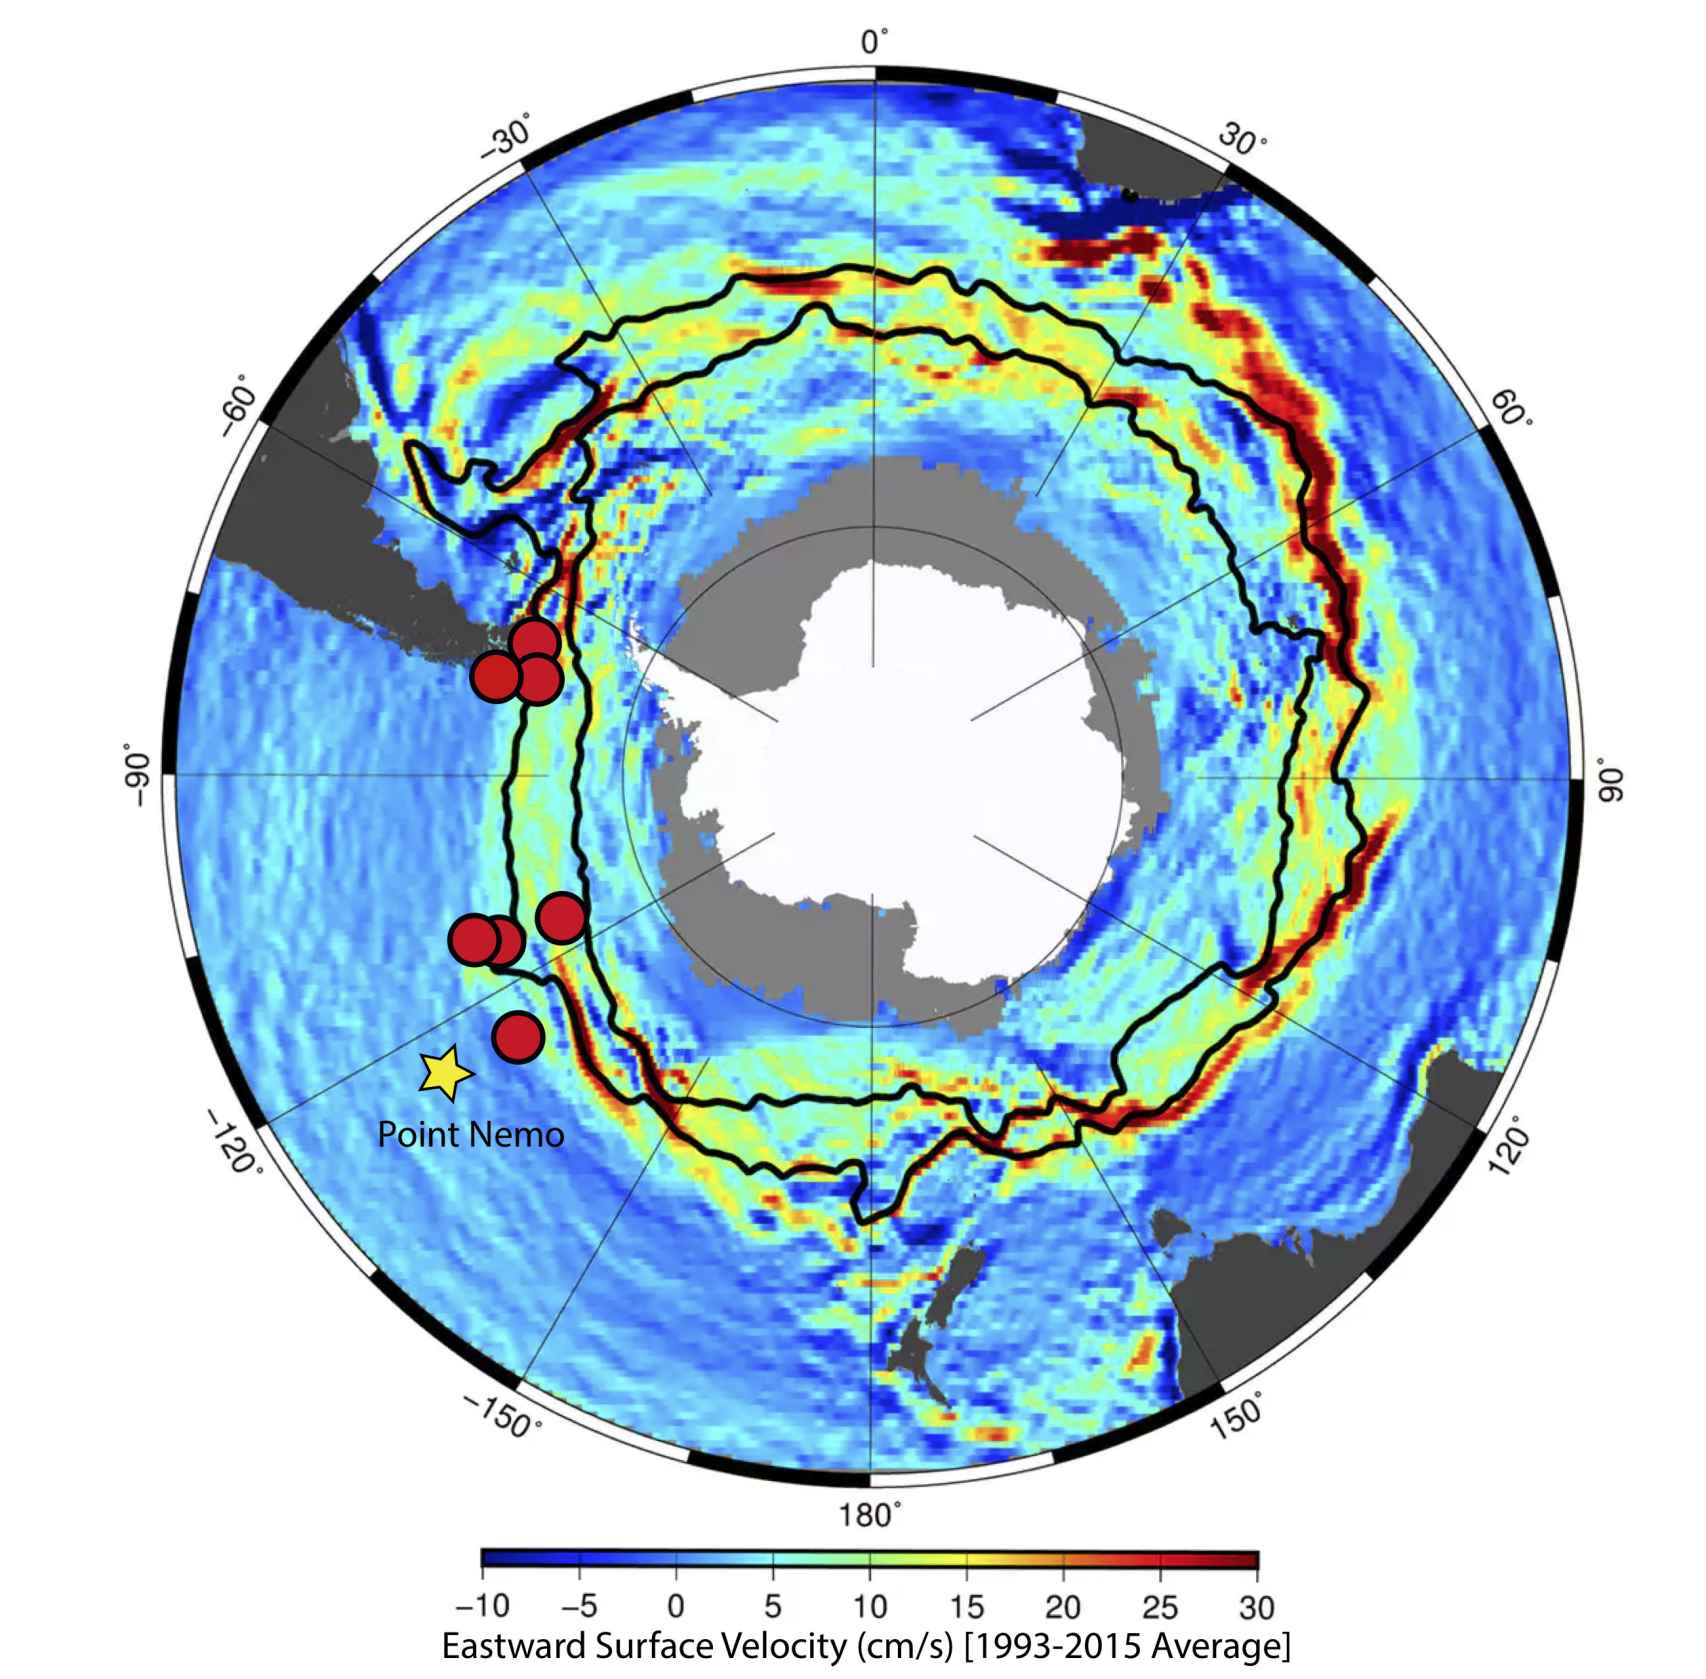 La Corriente Circumpolar Antártica rodea la Antártida girando en la dirección de las agujas del reloj.